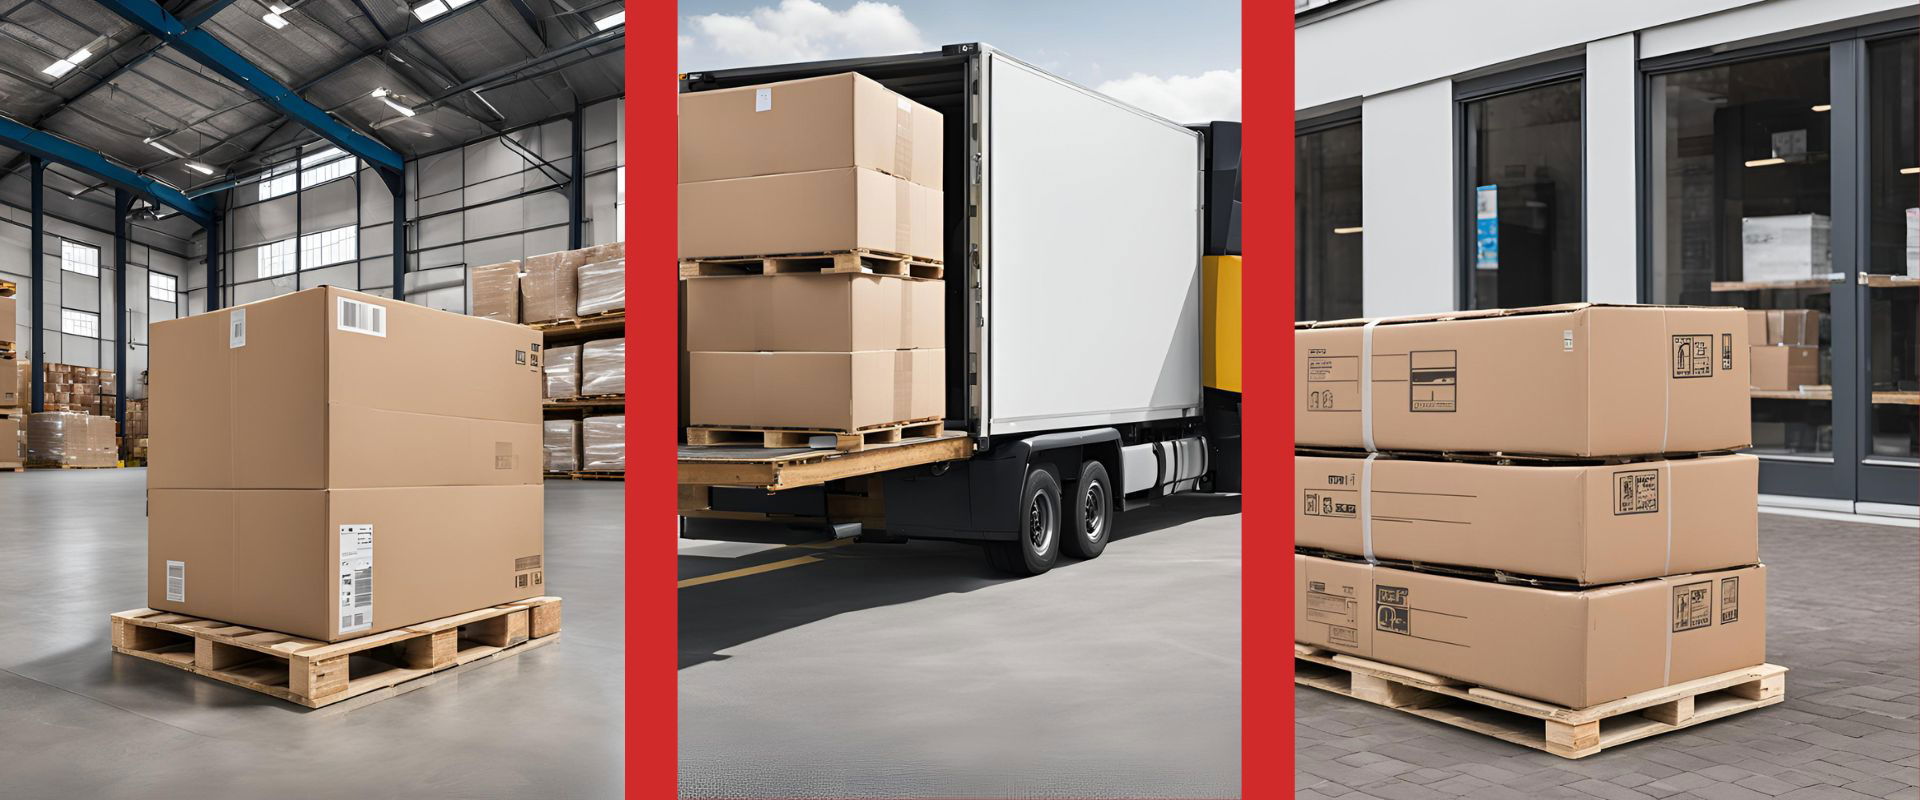 Was ist innerbetriebliche Logistik?